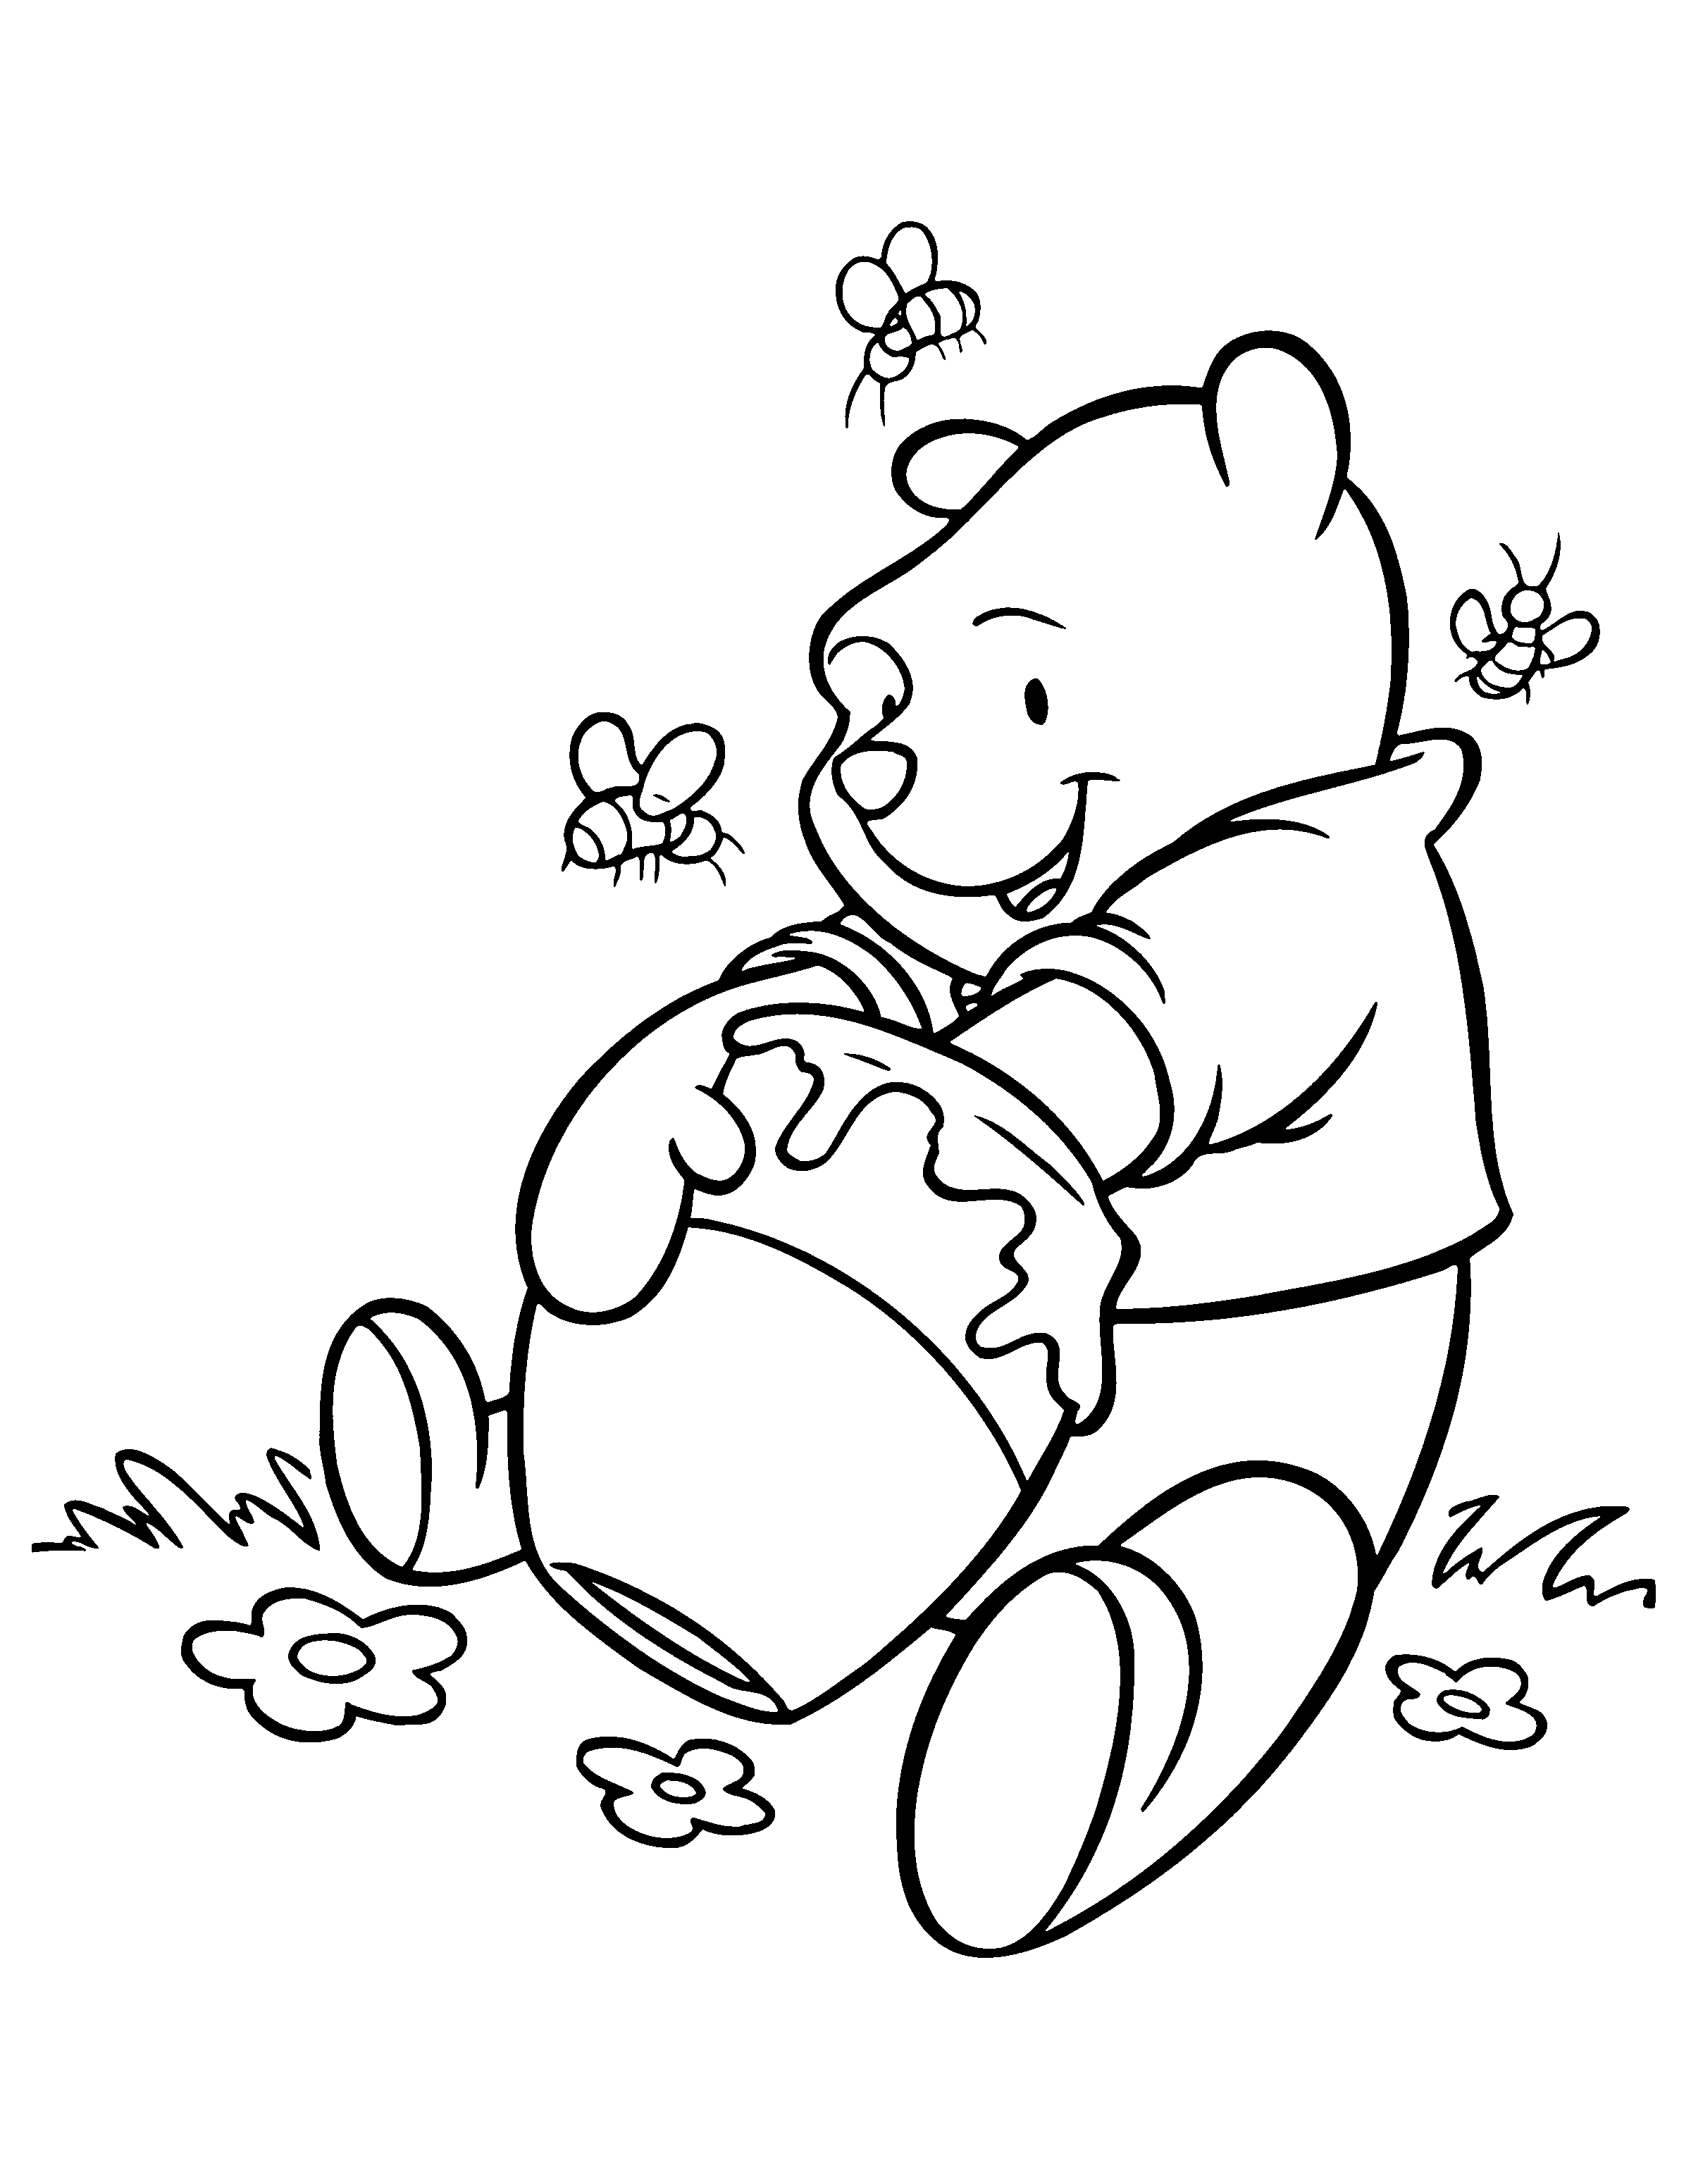 Disegno di Miele di Winnie The Pooh da colorare